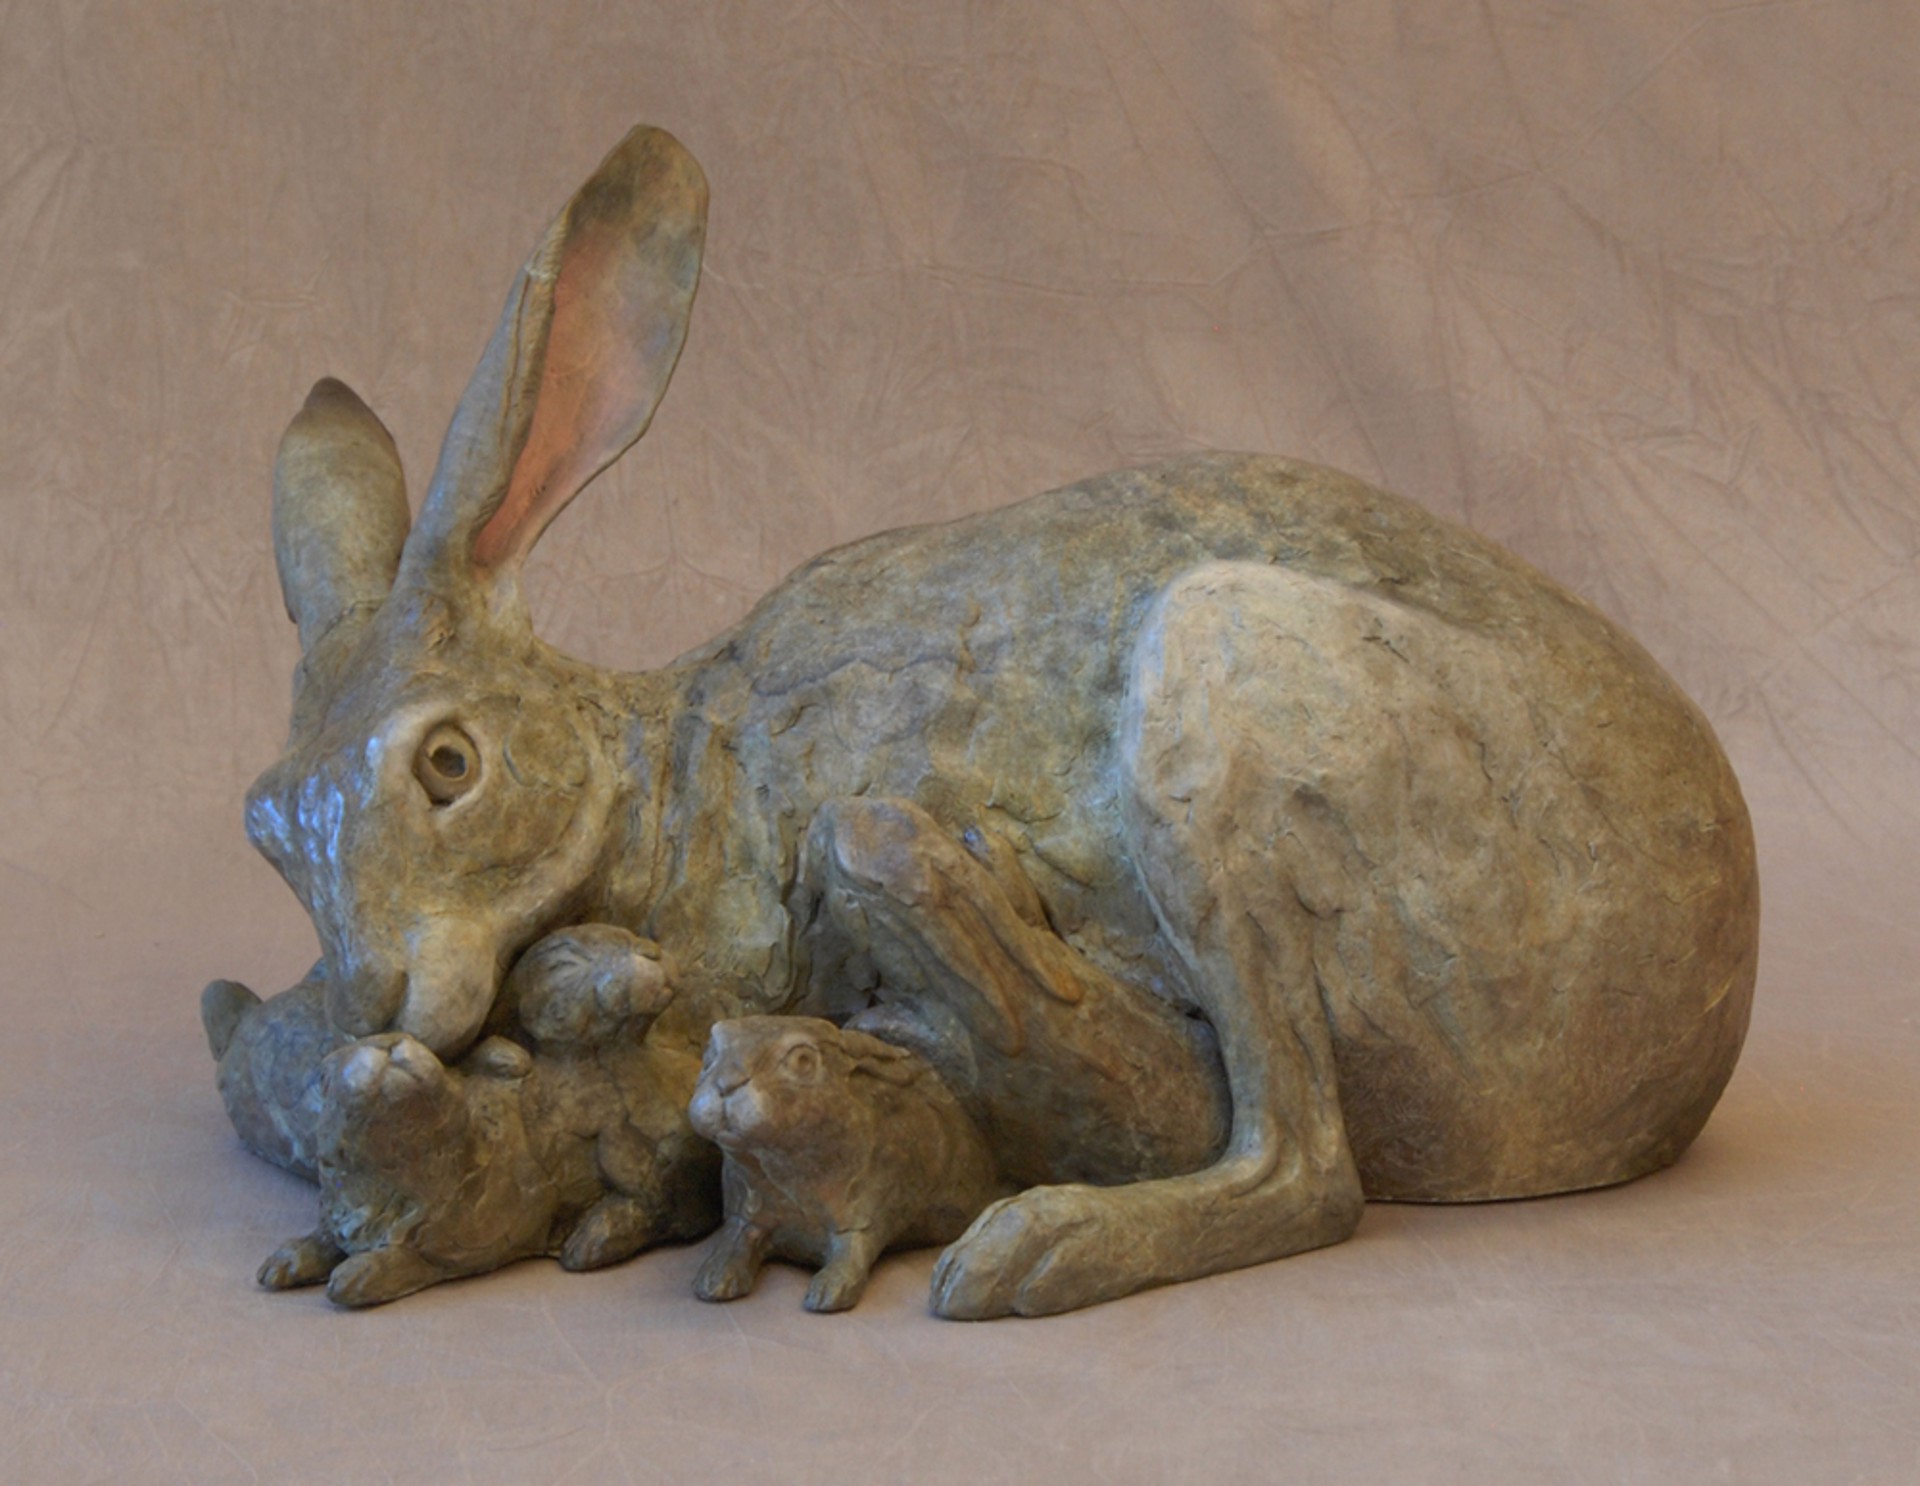 Jack Rabbit Family by Jim Eppler